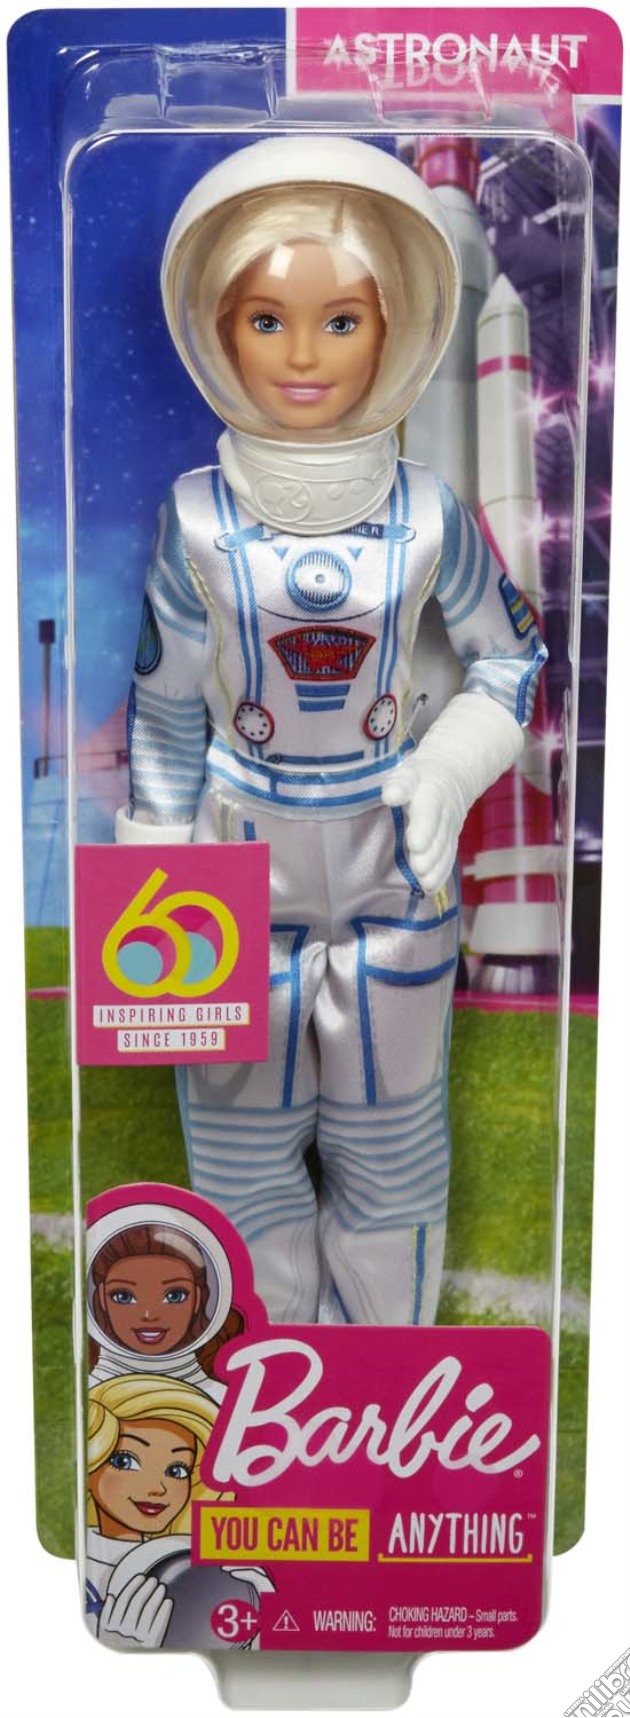 Mattel GFX24 - Barbie - Carriere 60 Anniversario - Astronauta gioco di Mattel